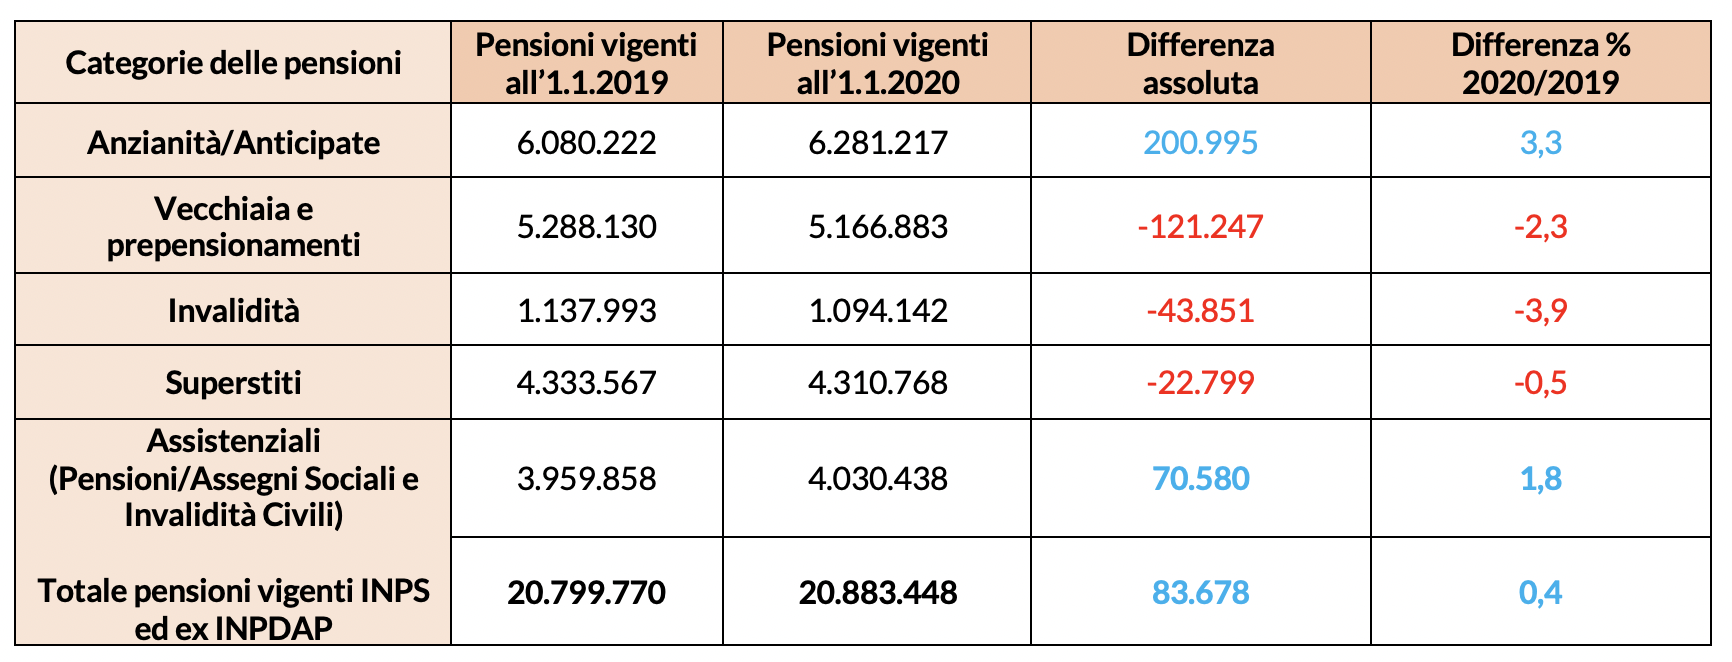 Numero pensioni INPS ed ex INPDAP (*) vigenti all'1 gennaio degli anni 2019 e 2020 per categoria 